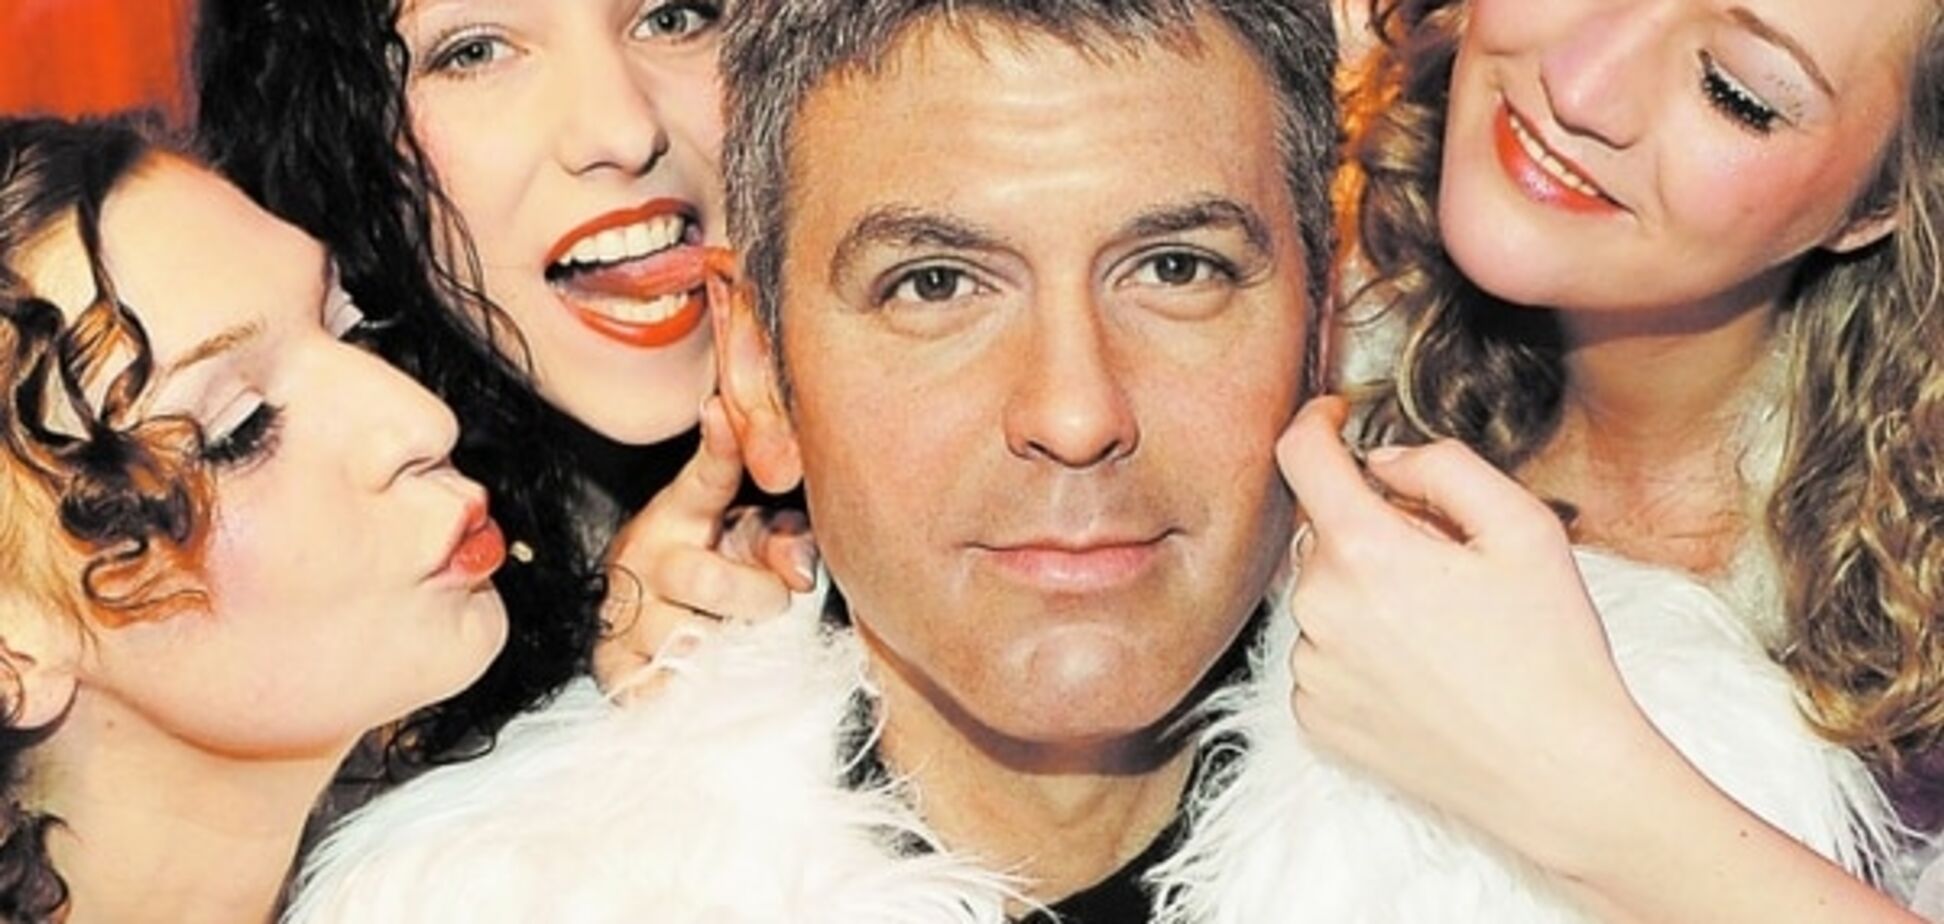 Тайны звездных бабников: Клуни спаивал женщин шампанским, а Депп вел двойную жизнь